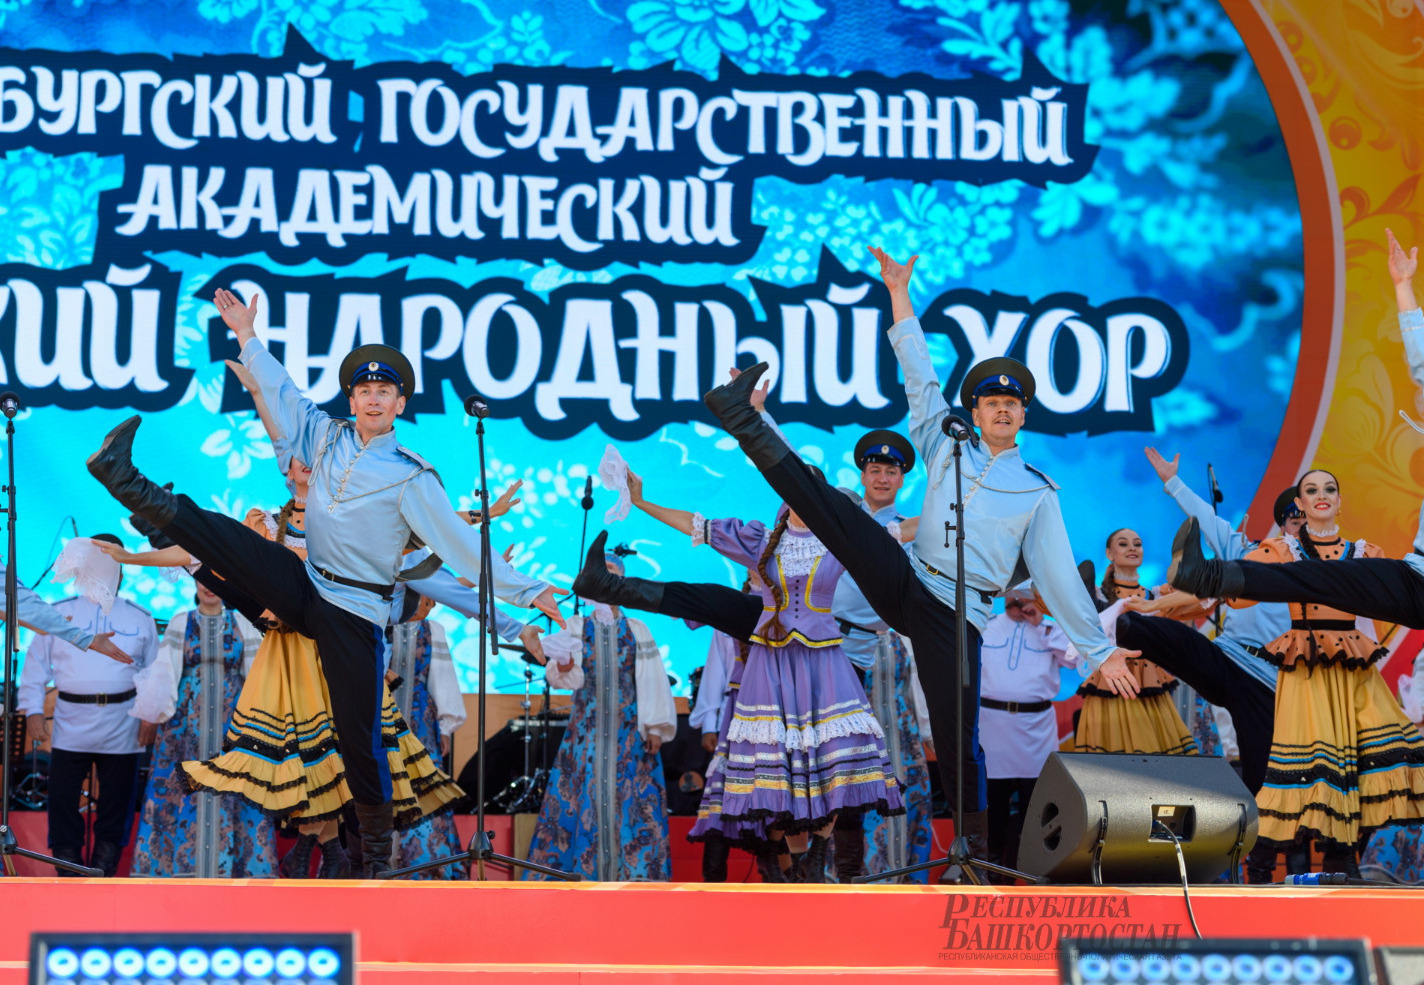 Оренбургский государственный академический русский  народный хор